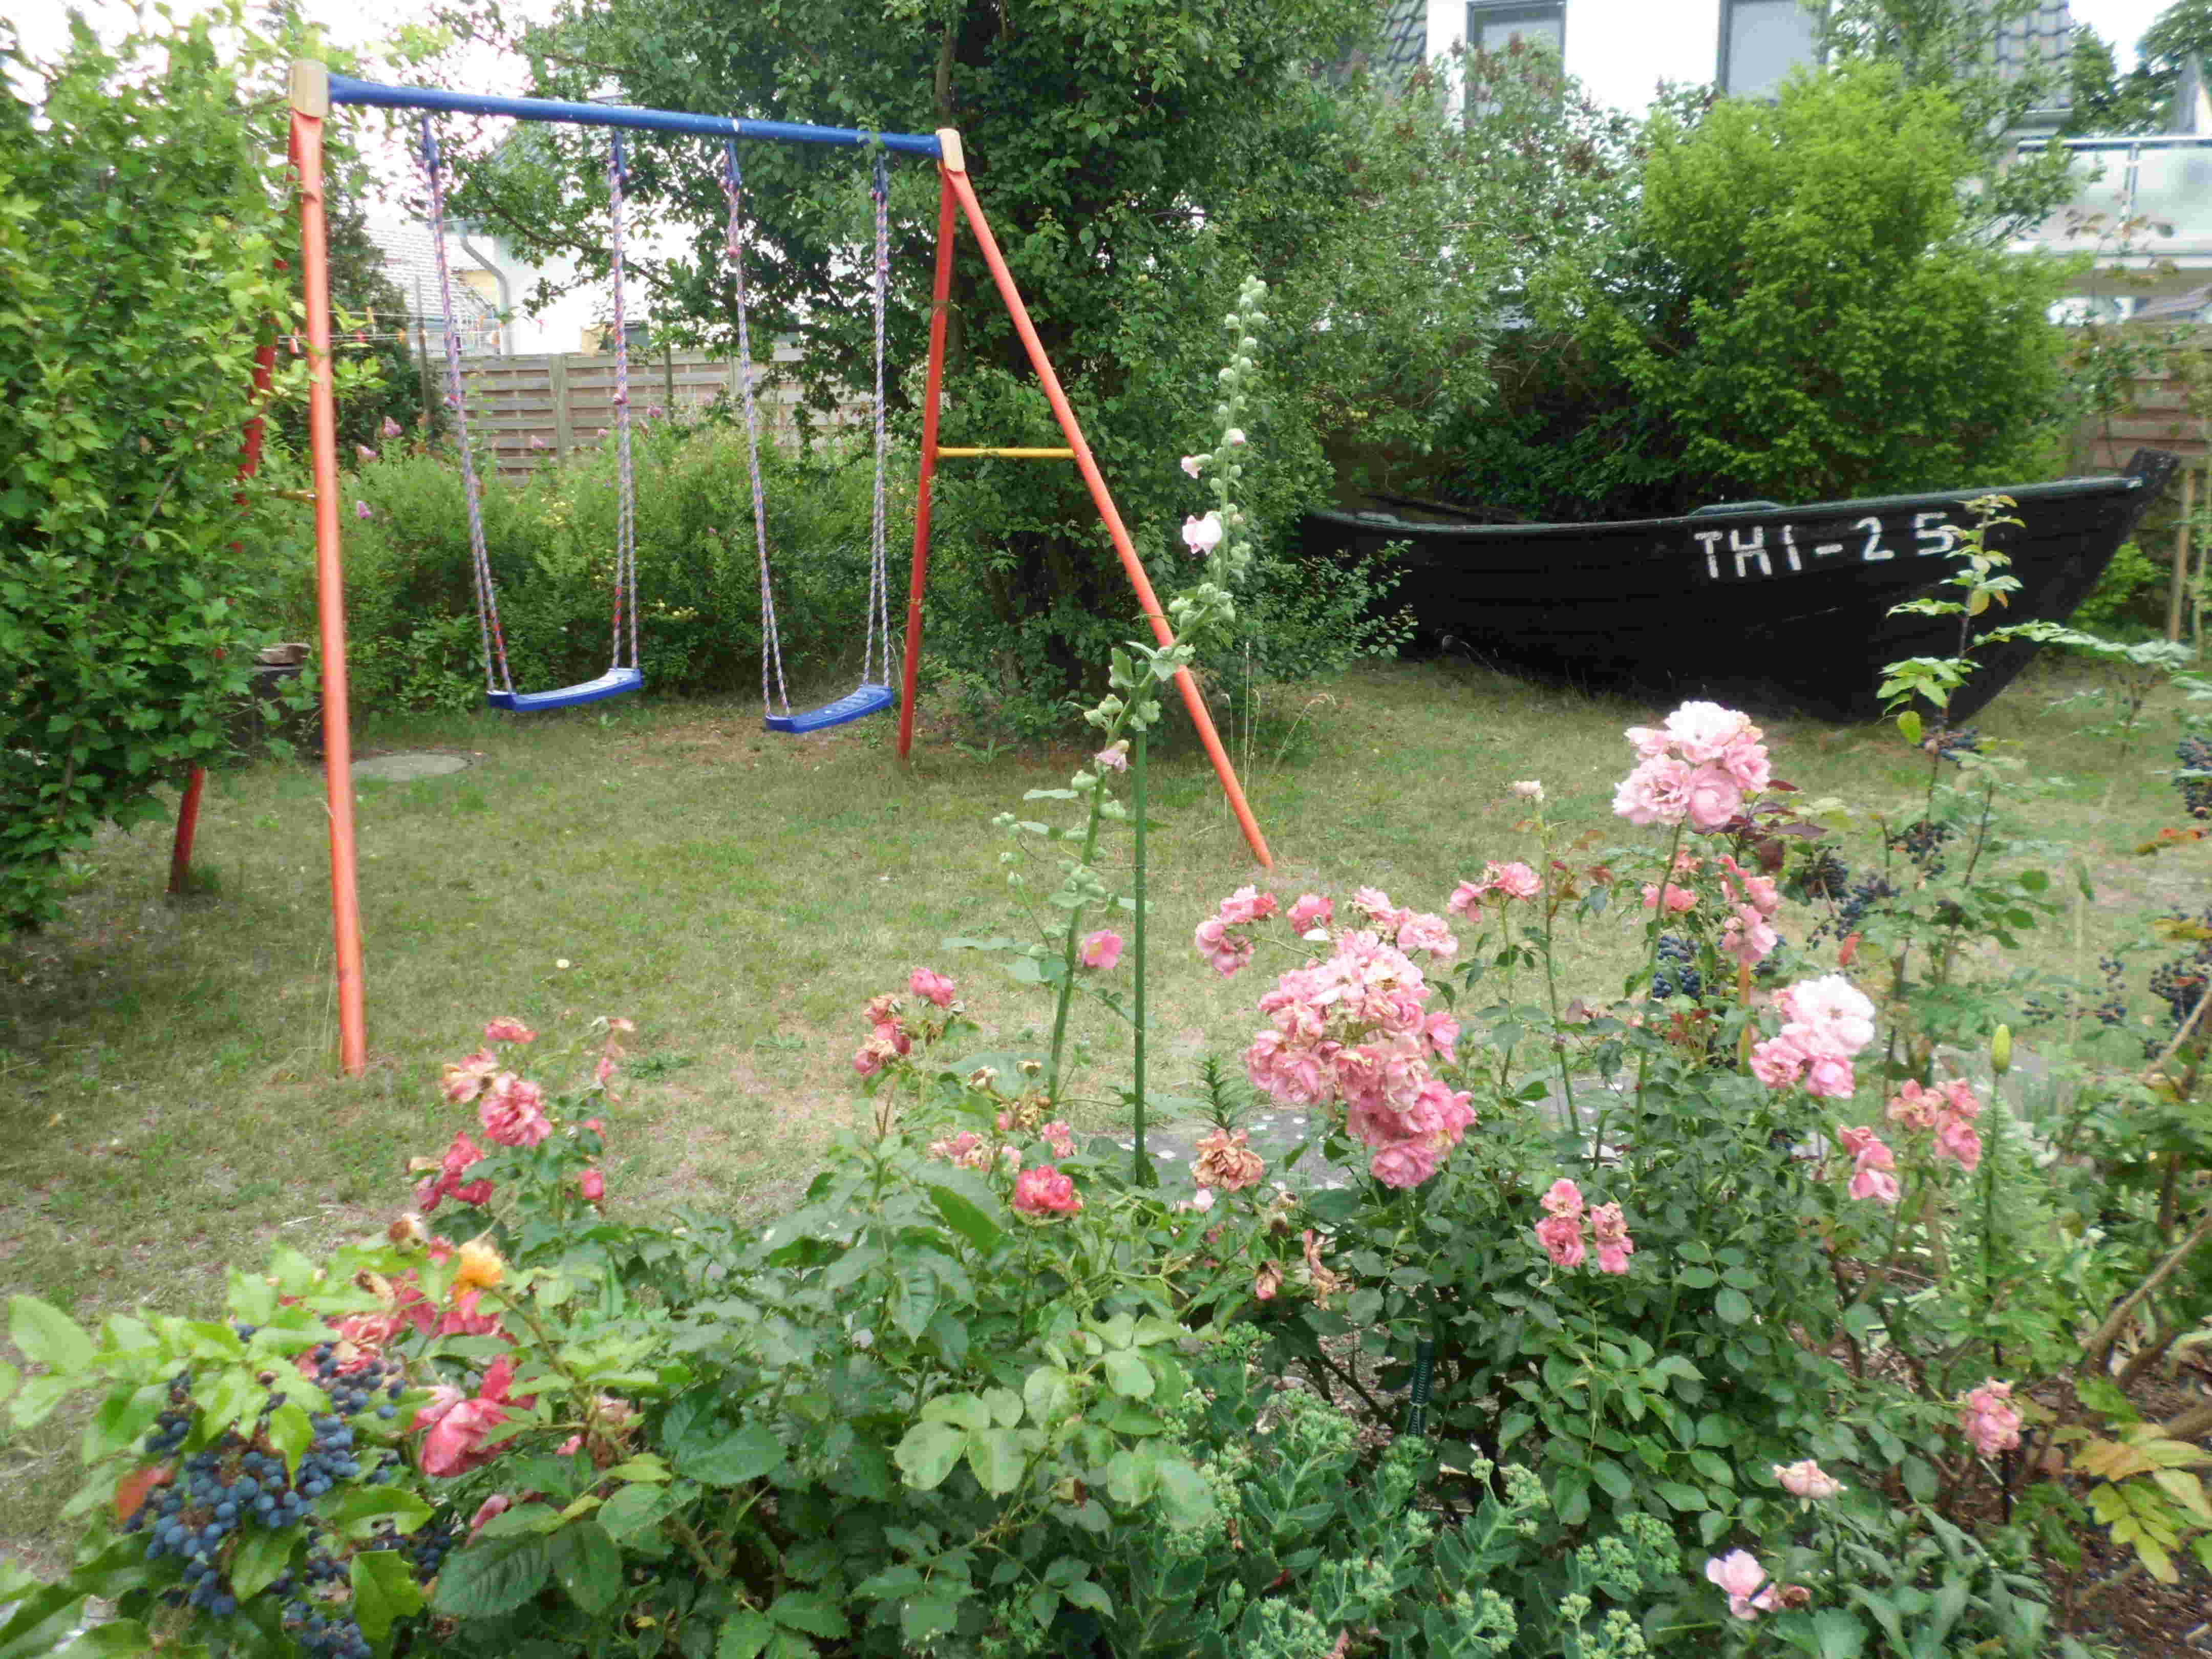 Ein Bild vom Garten von der fewo Terrasse aus gesehen mit Schaukel und altem Fischerboot.